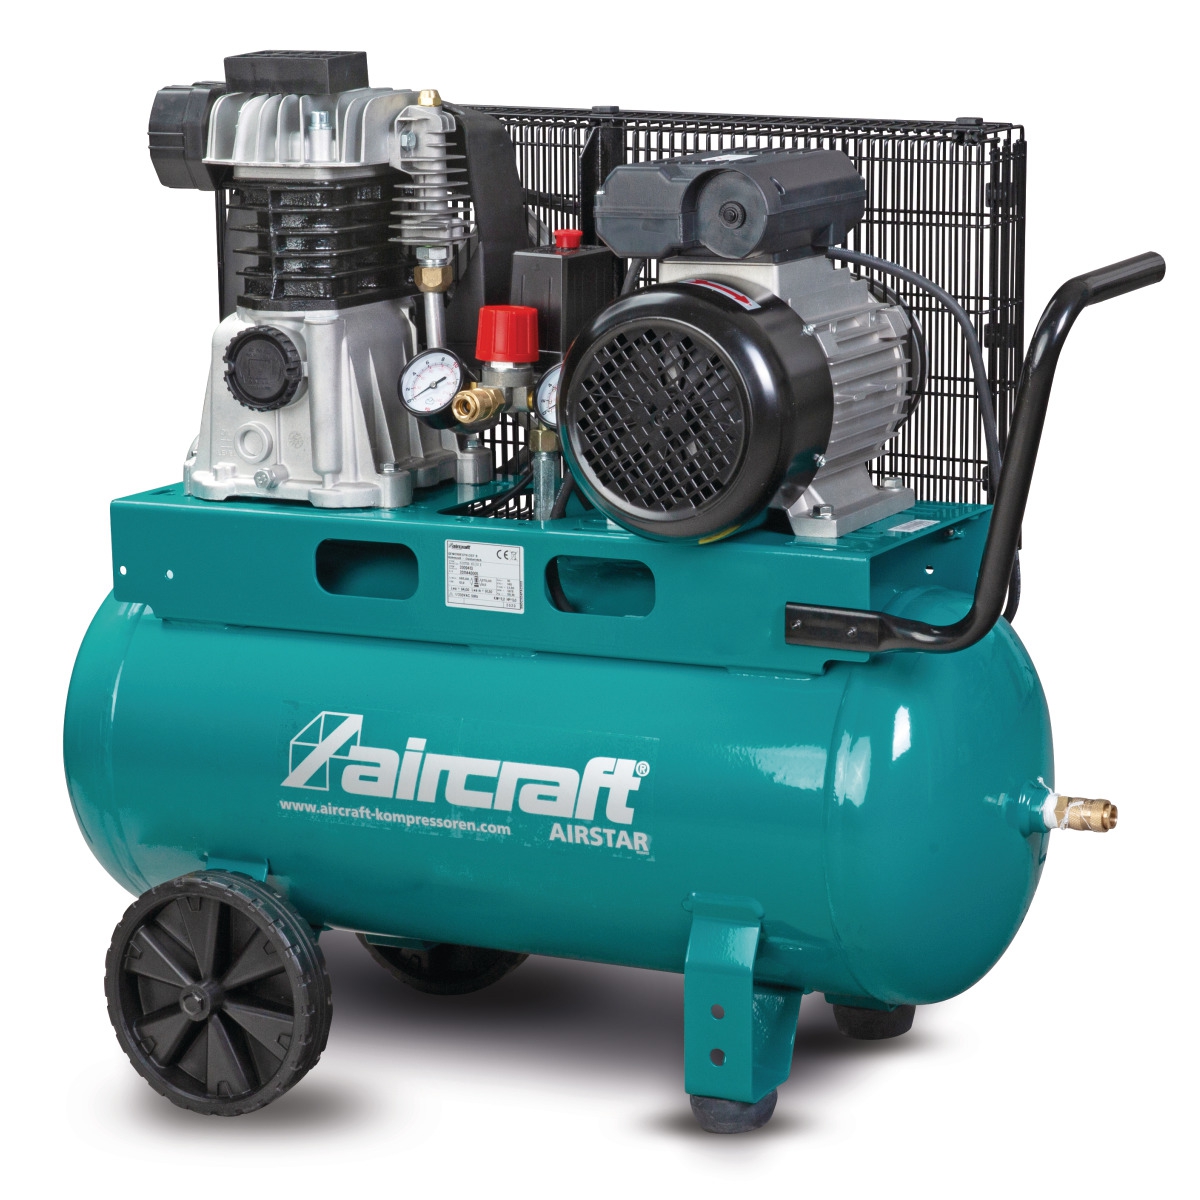 AIRCRAFT Fahrbarer Kompressor AIRSTAR 401/50 E - 230 V